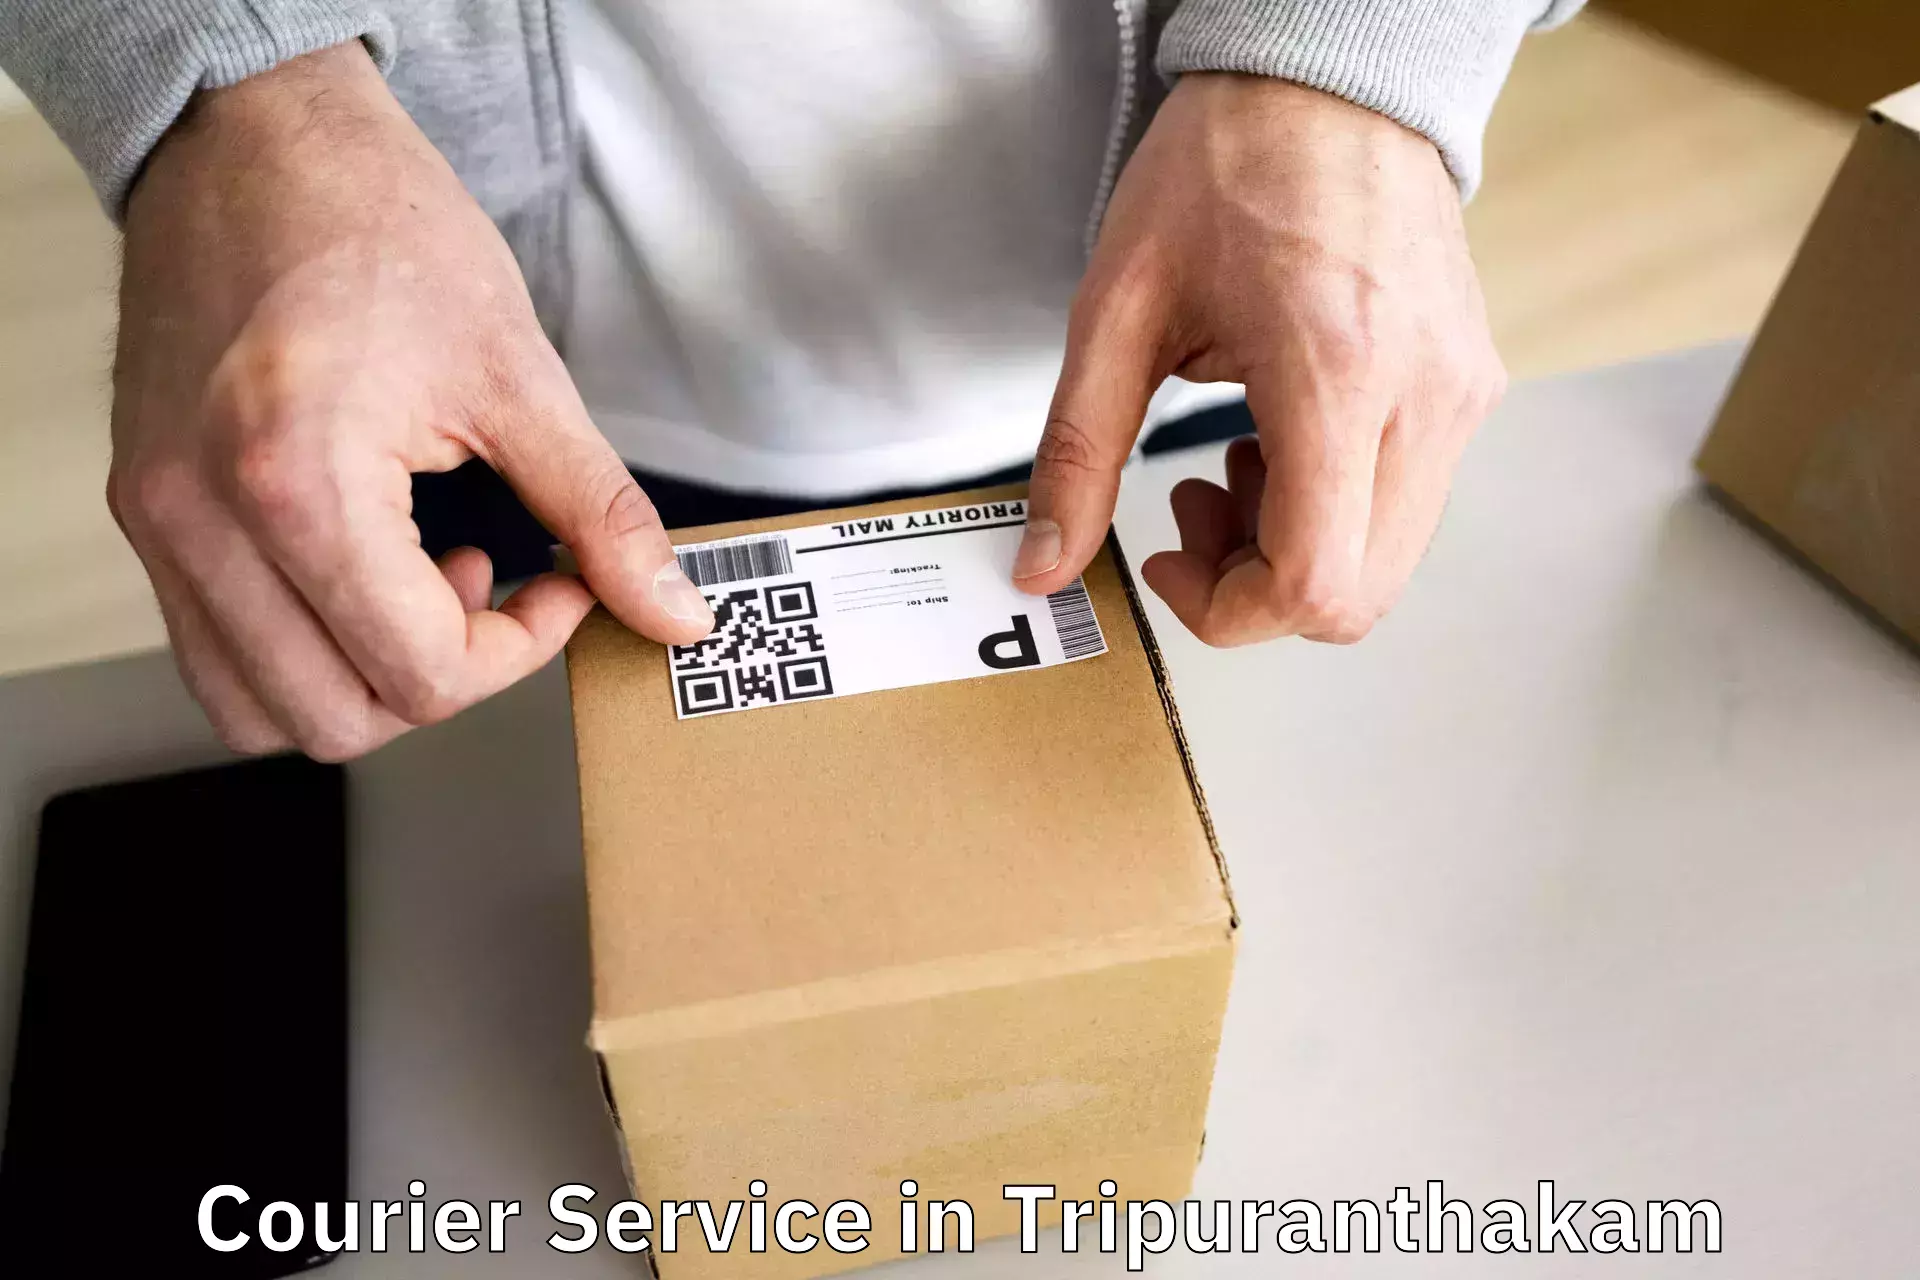 Modern courier technology in Tripuranthakam